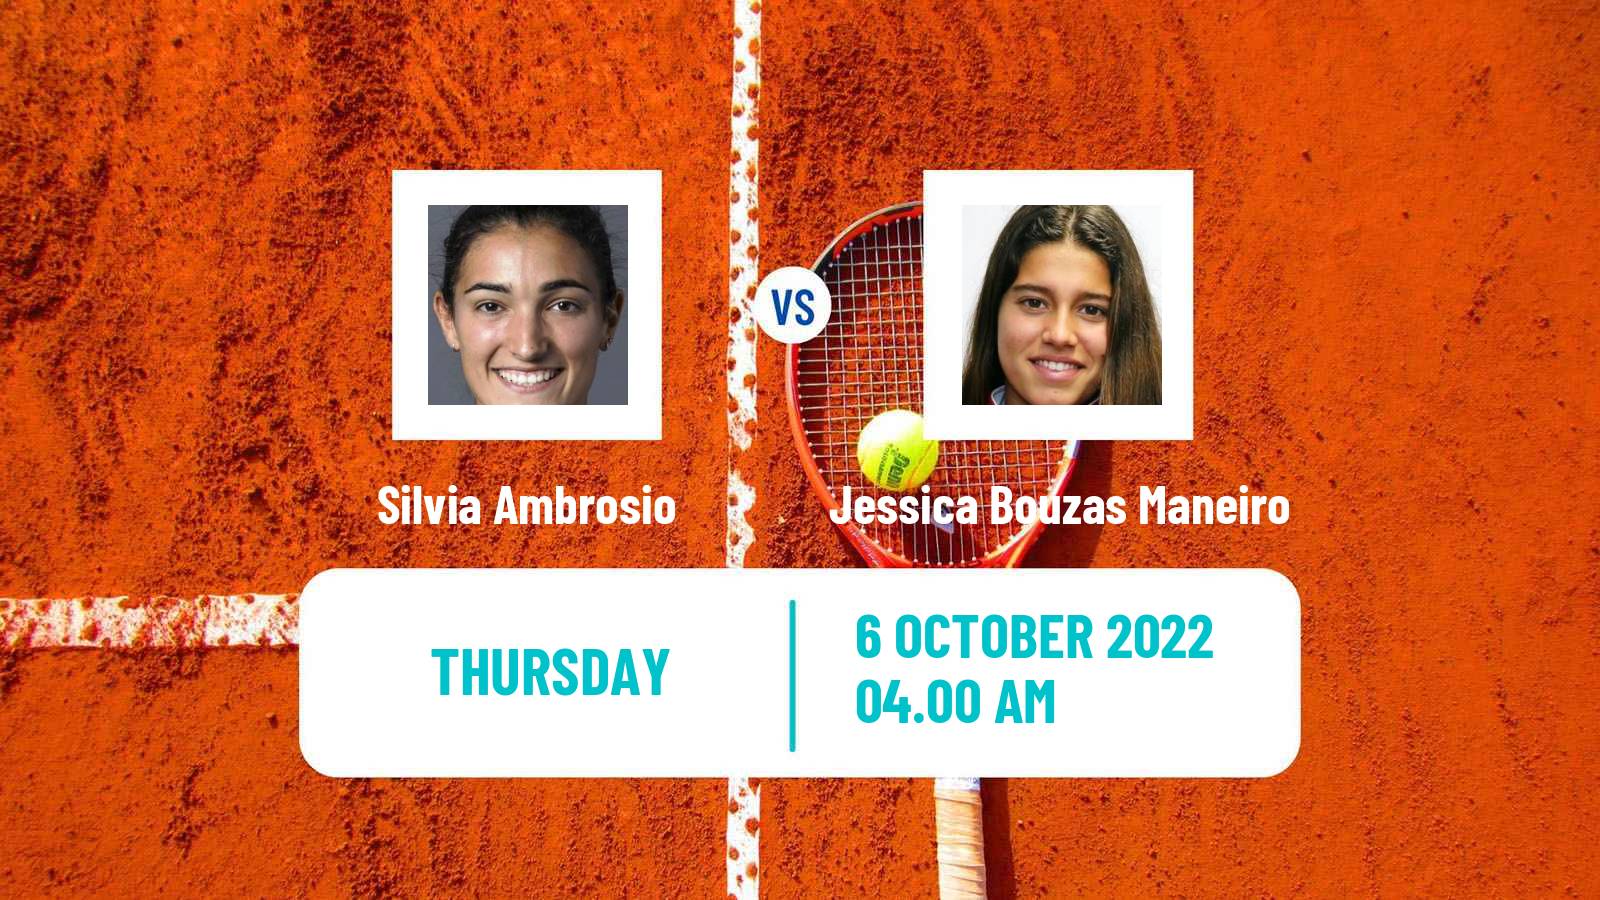 Tennis ITF Tournaments Silvia Ambrosio - Jessica Bouzas Maneiro